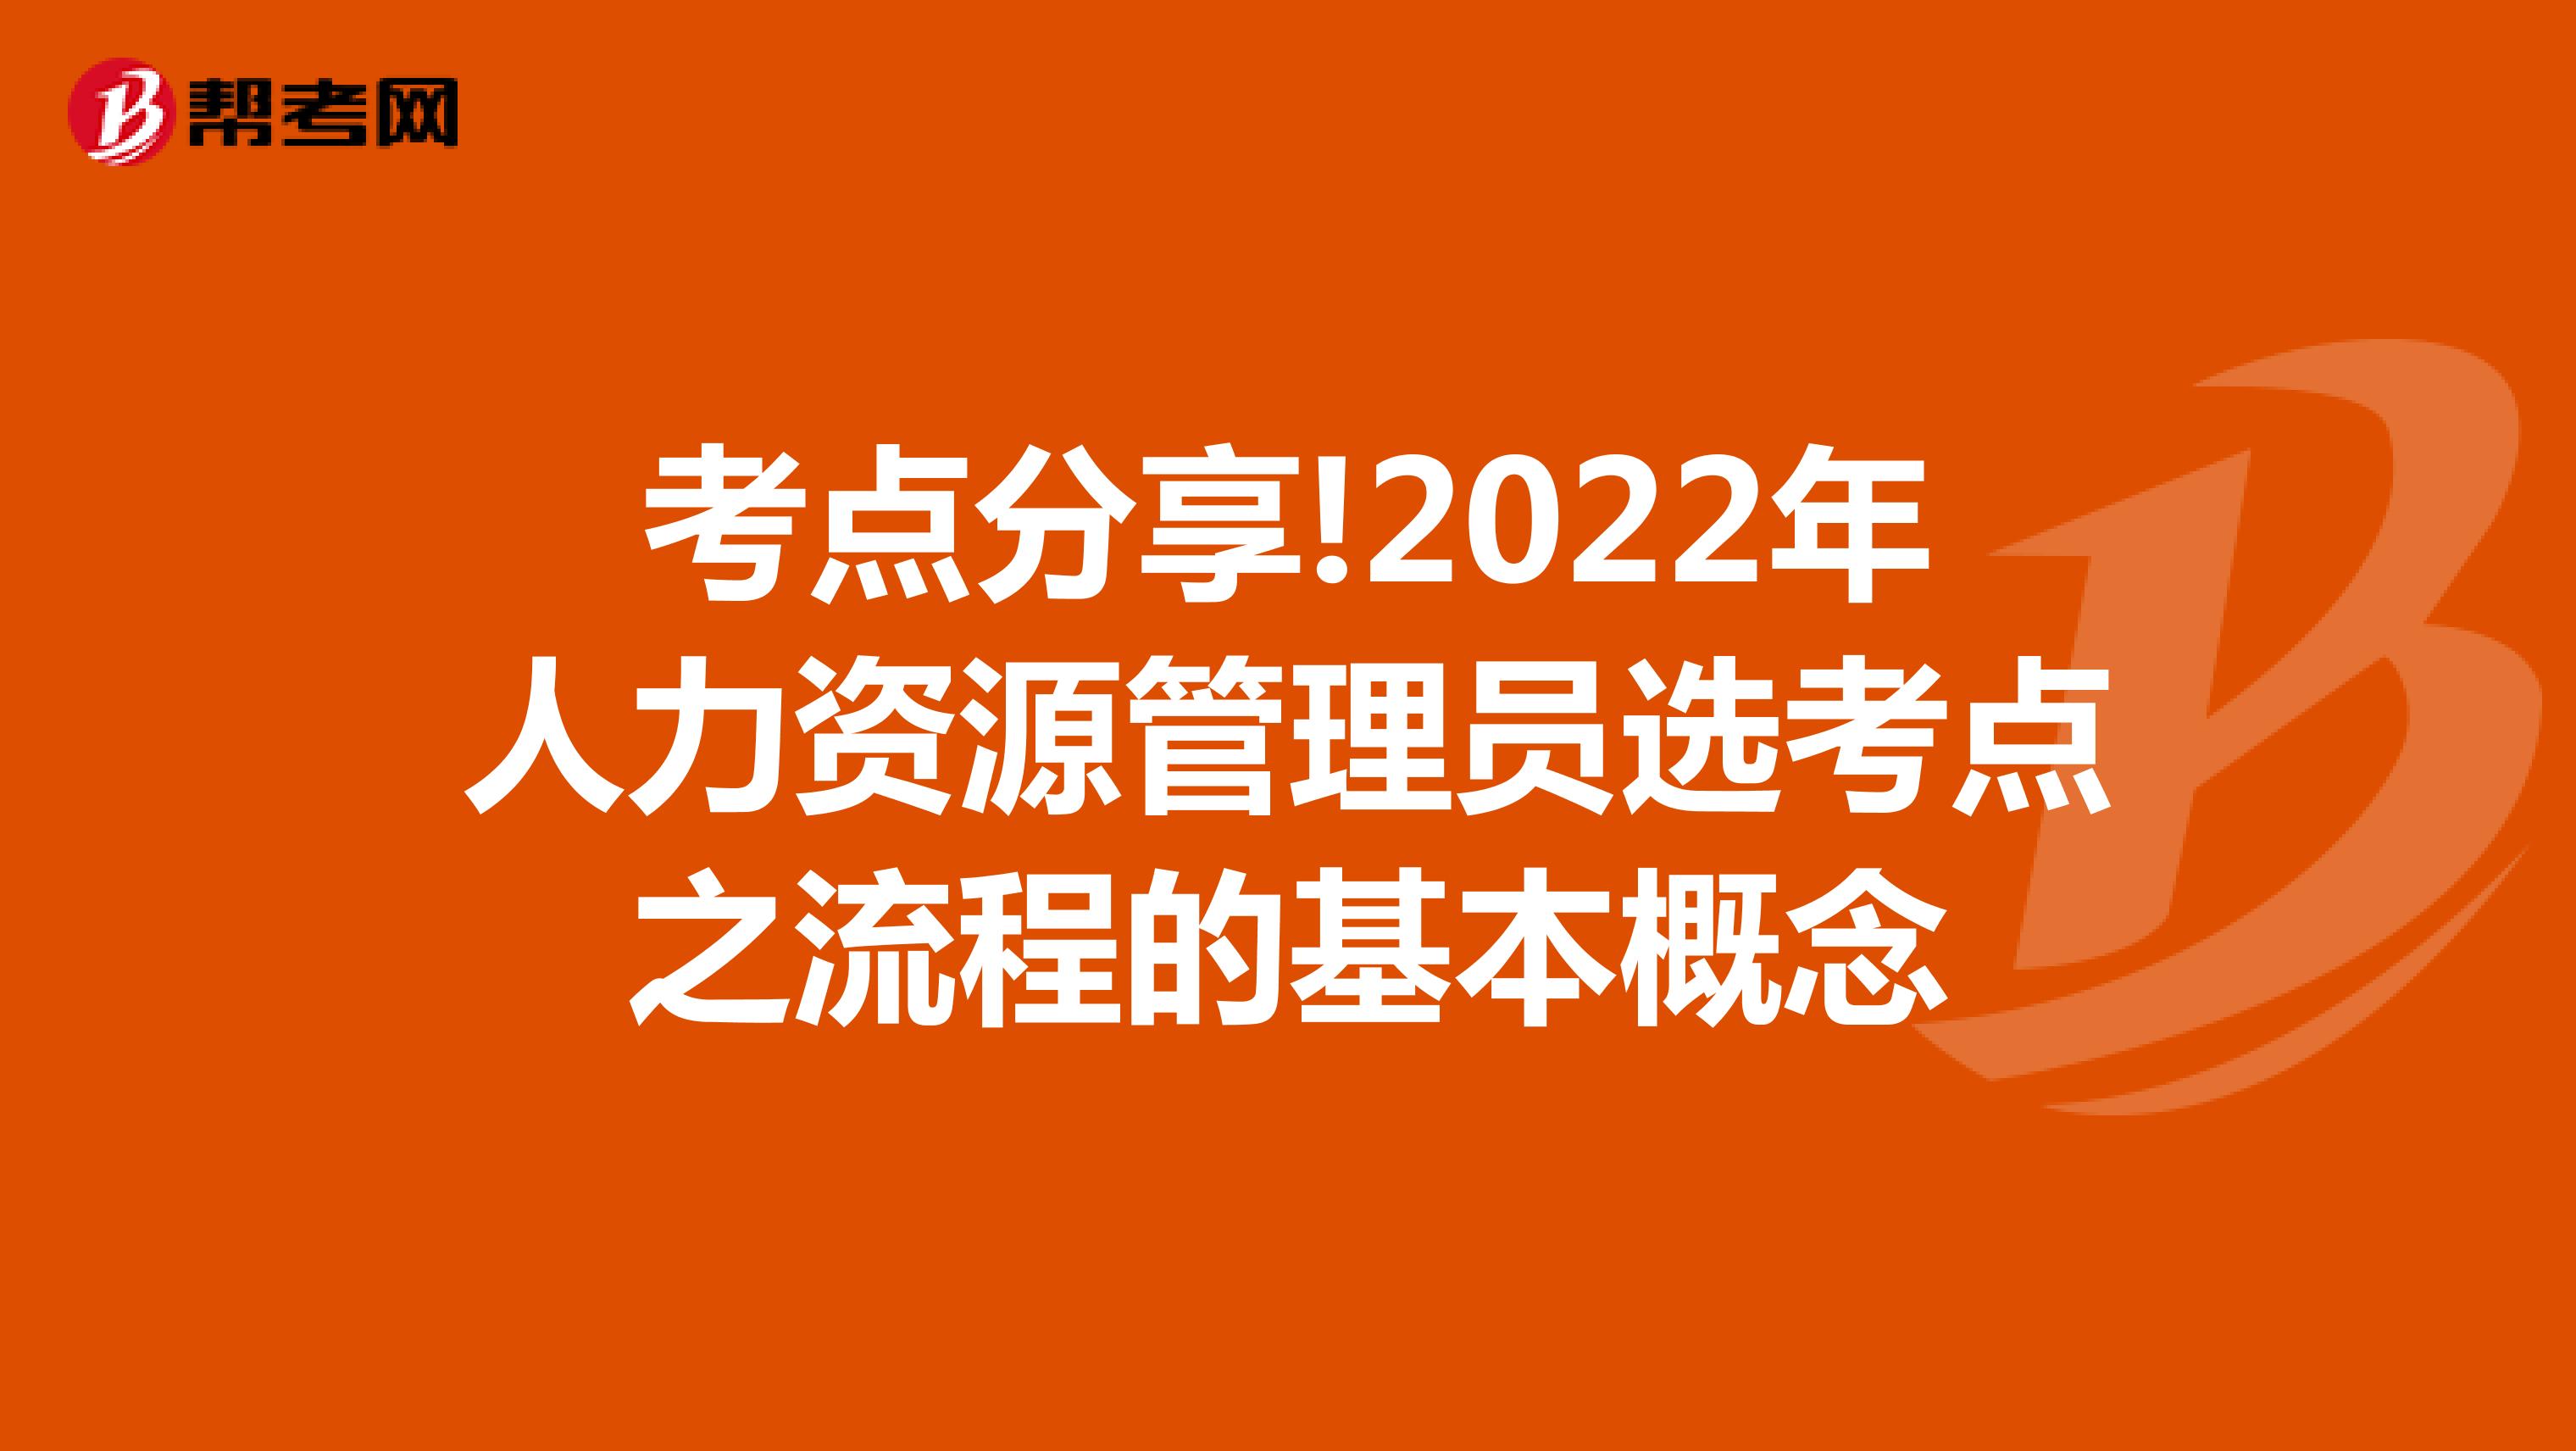 考点分享!2022年人力资源管理员选考点之流程的基本概念